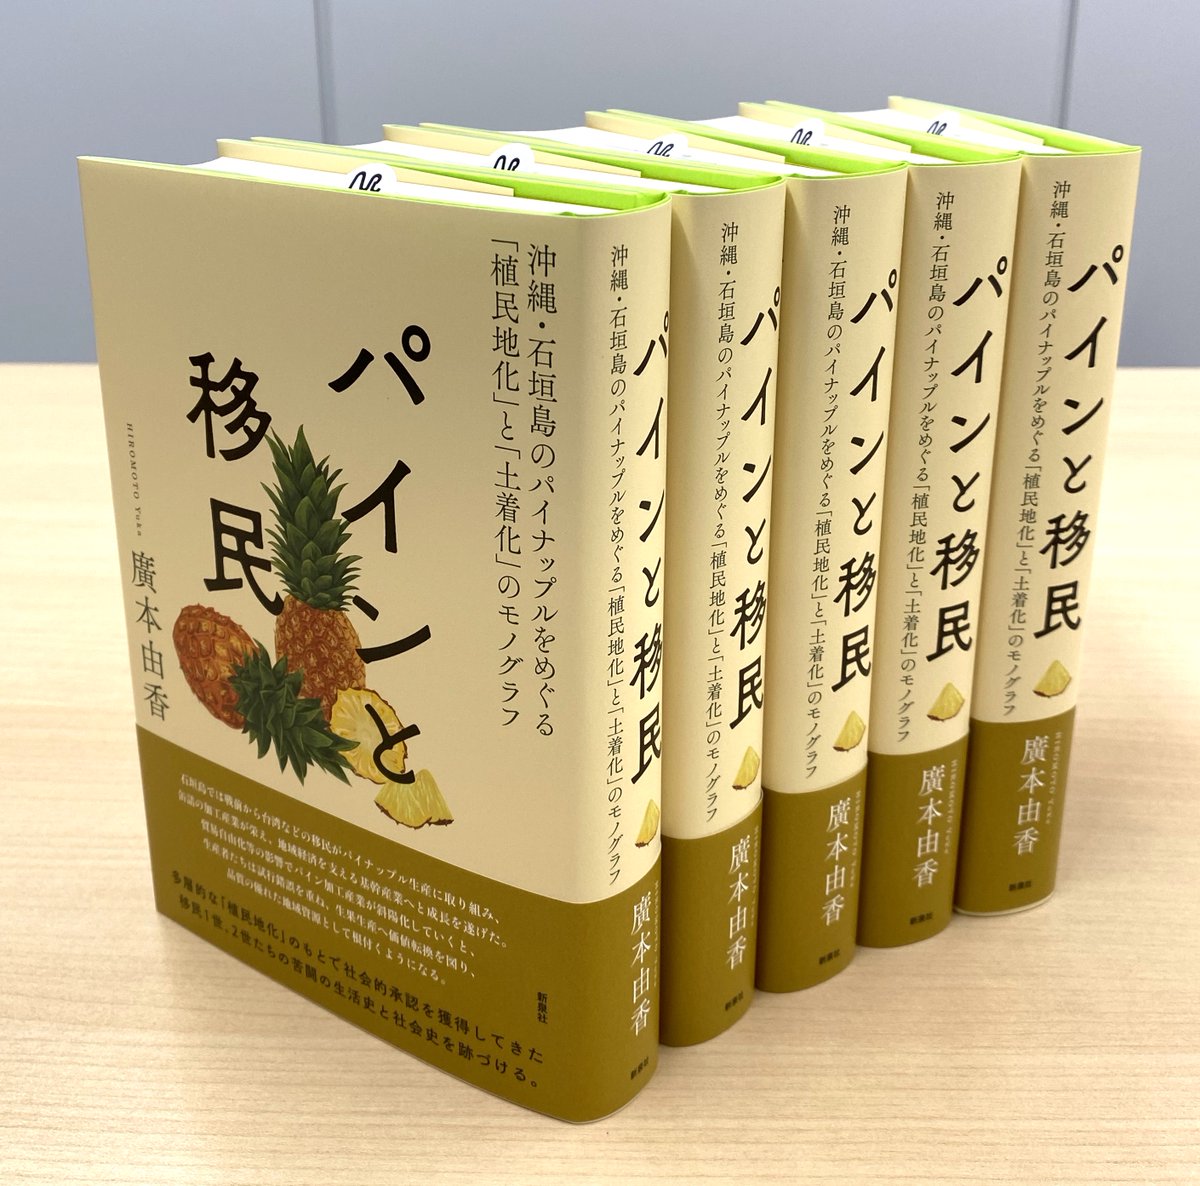 最新刊『パインと移民—沖縄・石垣島のパイナップルをめぐる「植民地化」と「土着化」のモノグラフ』廣本由香著が完成しました。3/11頃書店発売開始です。
shinsensha.com/books/6132/

〈多層的な「植民地化」のもとで社会的承認を獲得してきた移民1世、2世たちの苦闘の生活史と社会史を跡づける。〉